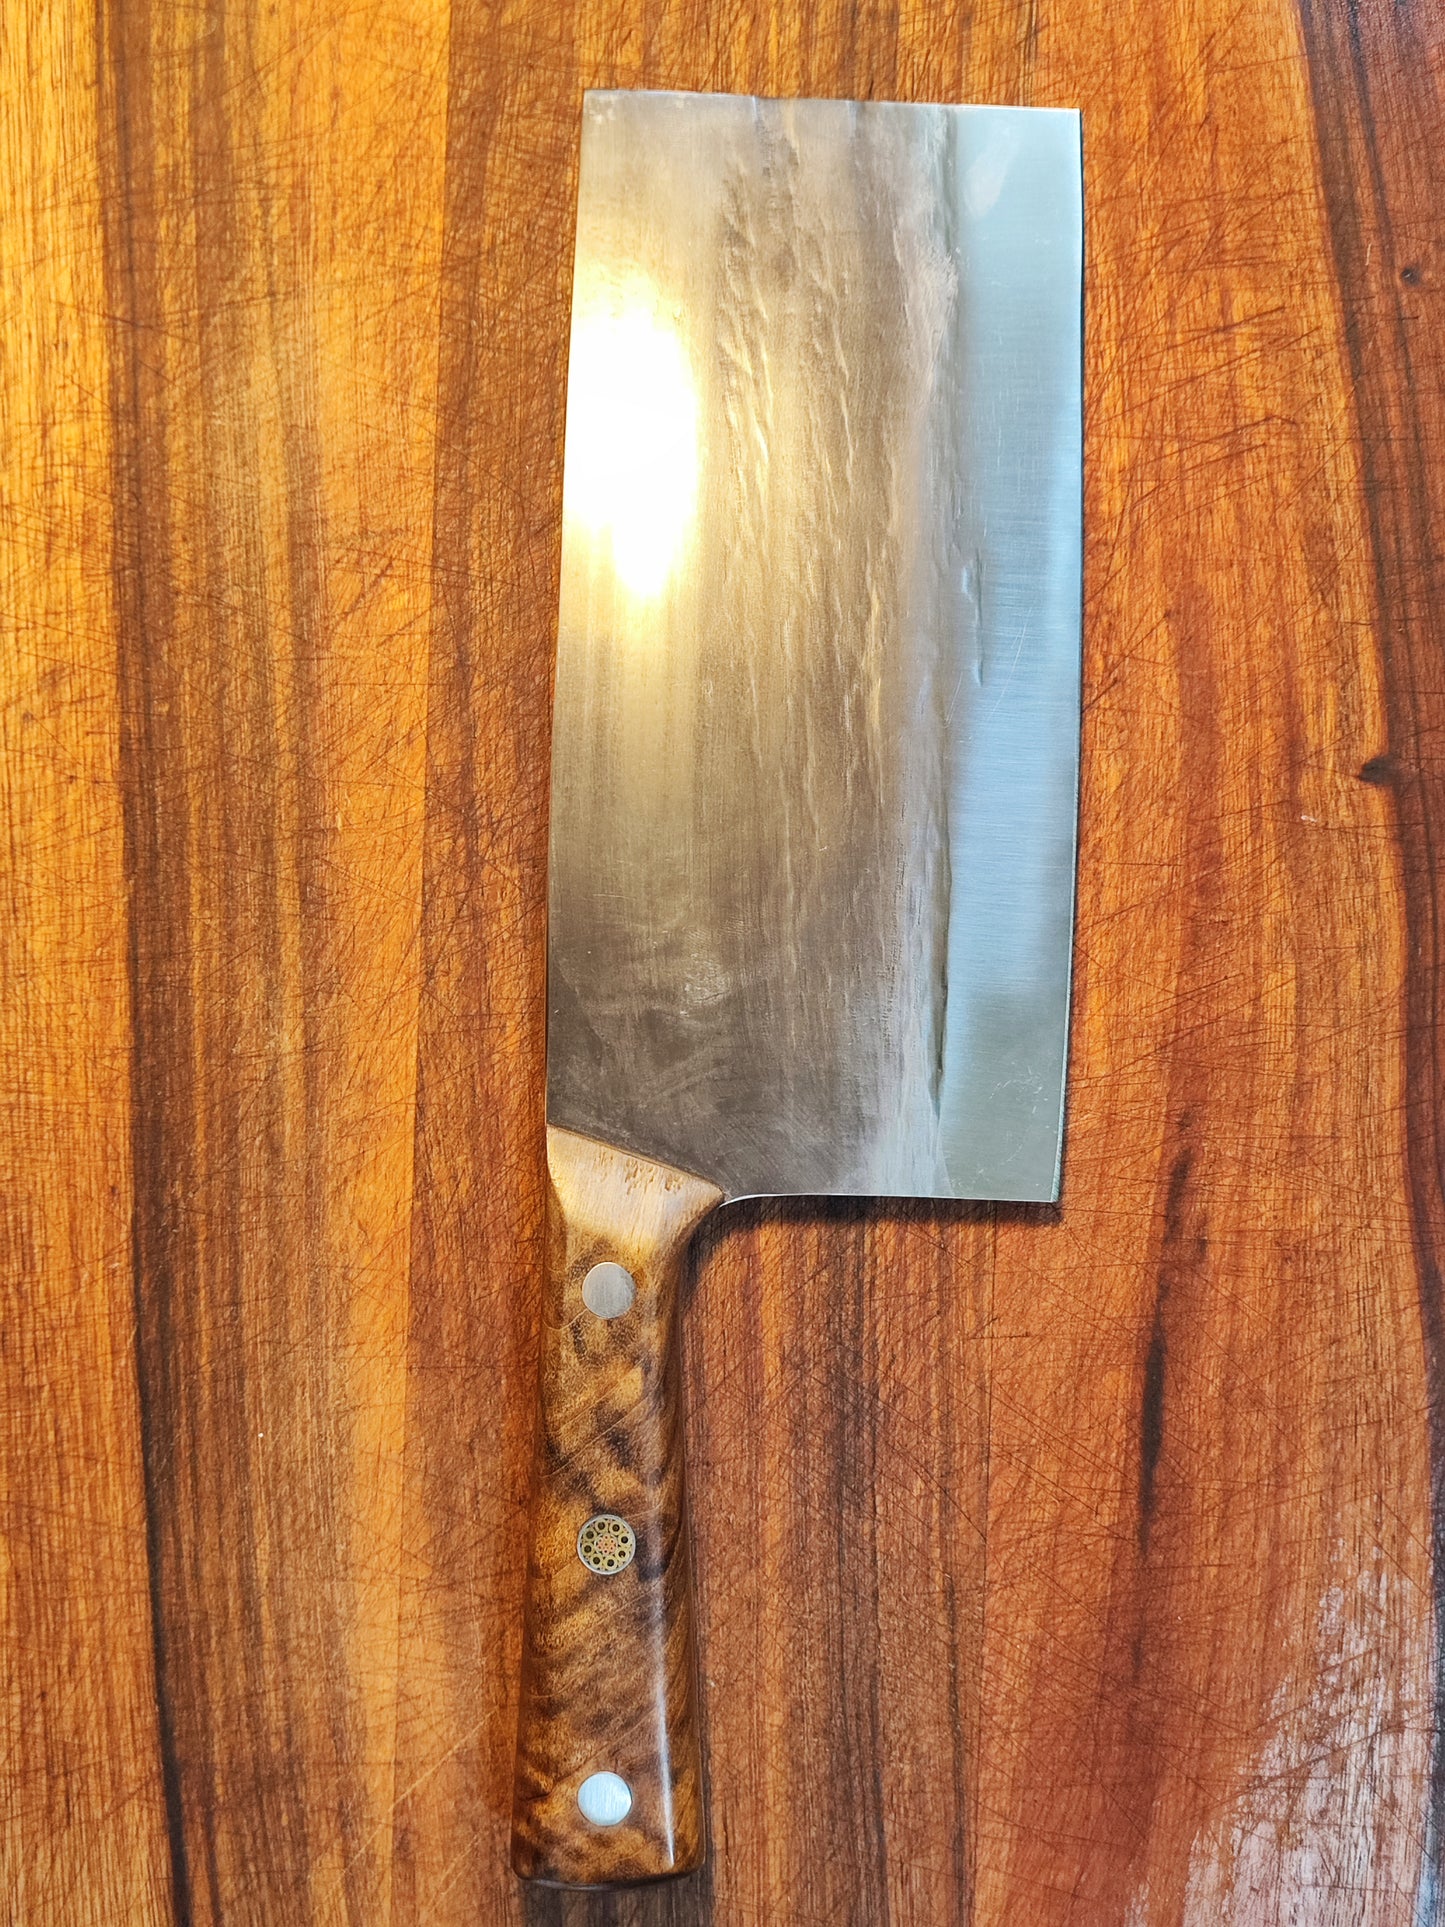 7号折影刀(片刀，切菜切肉)(轻)中式刀